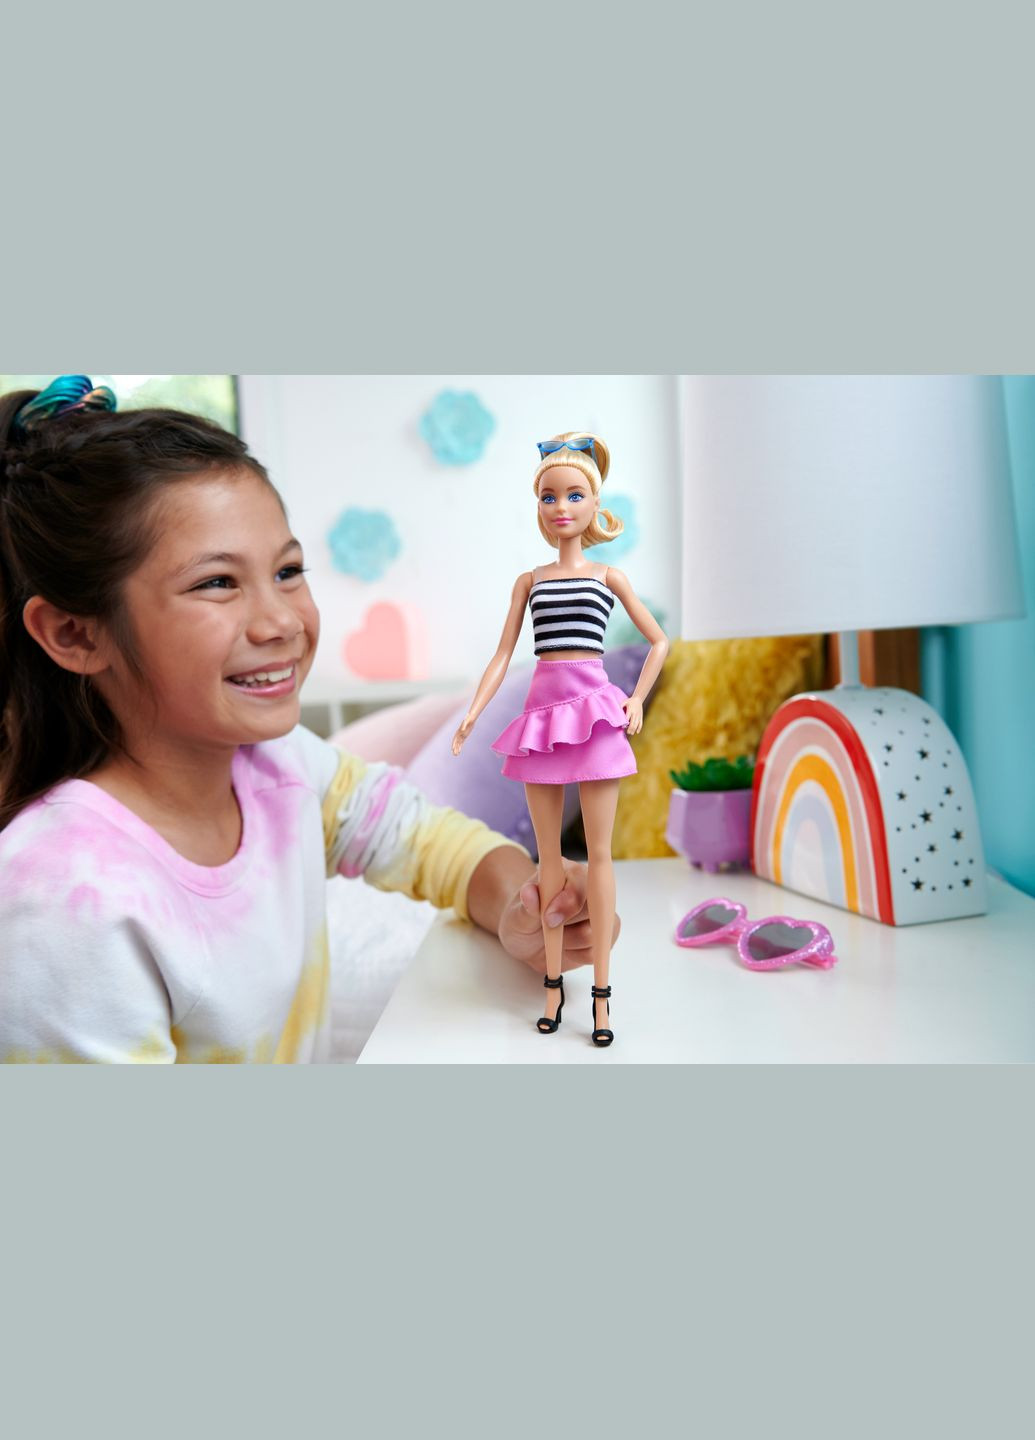 Кукла "Модница" в розовой юбке с рюшами (HRH11) Barbie (291838219)